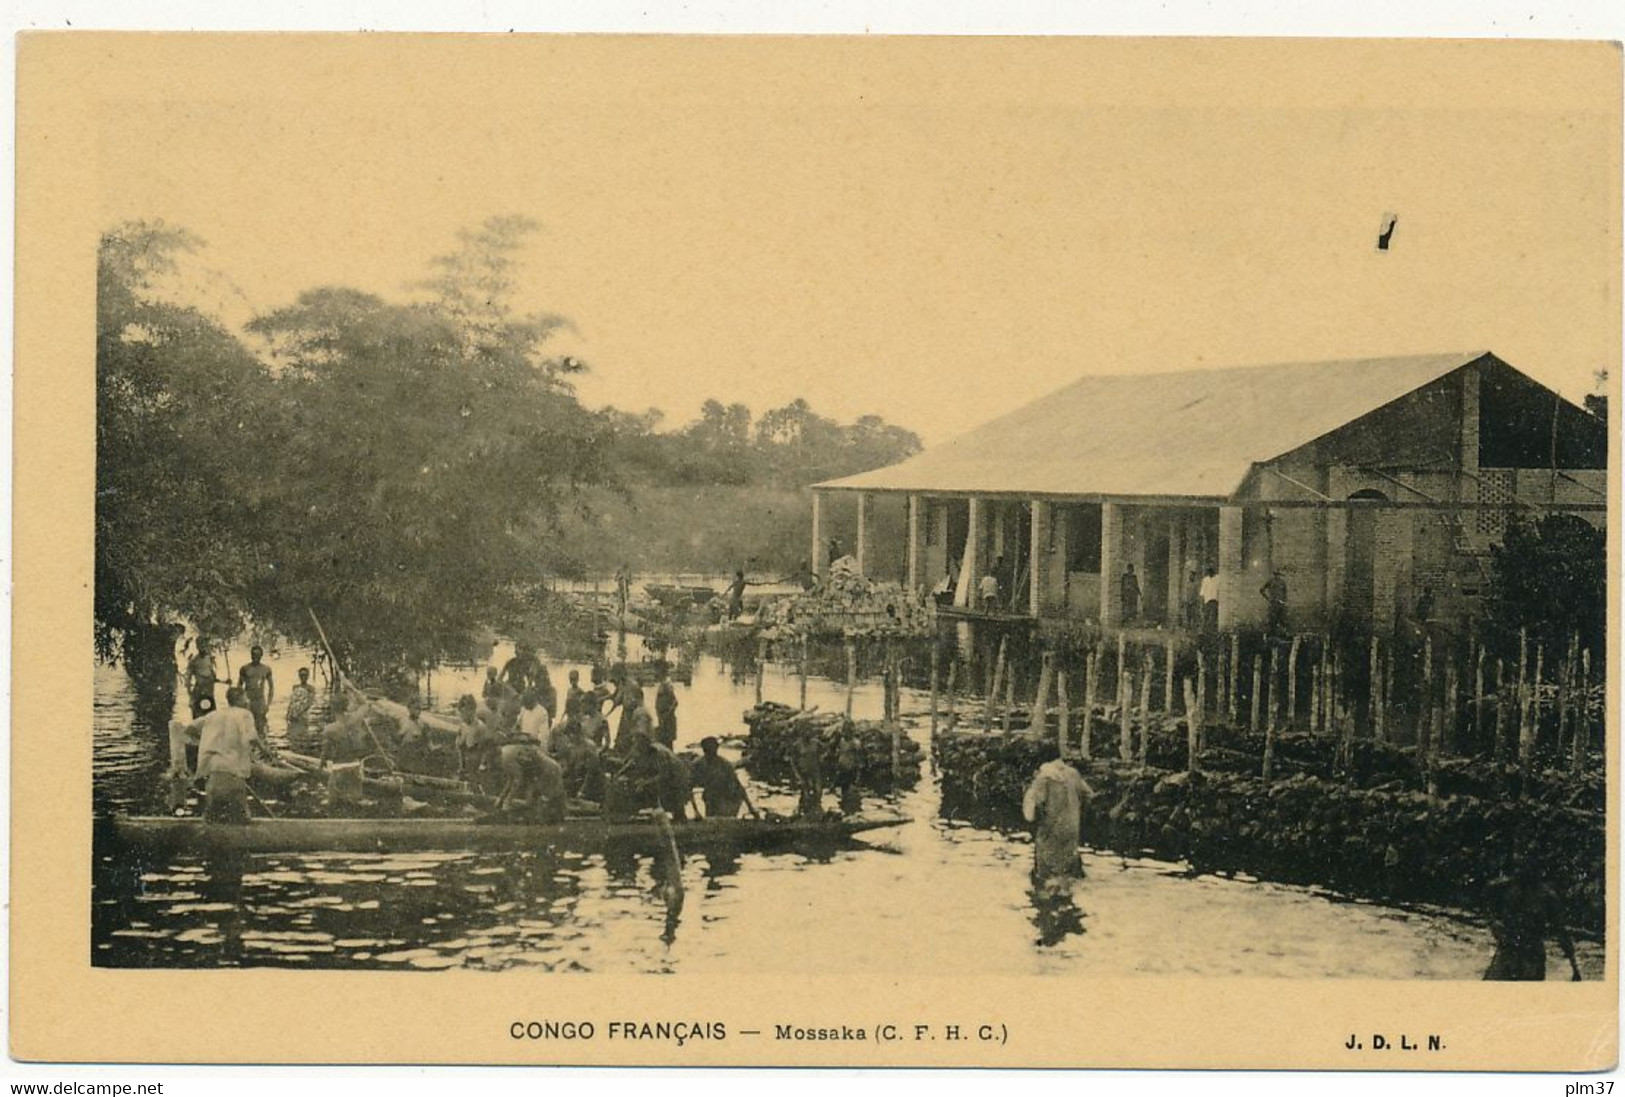 CONGO FRANCAIS - Mossaka, C. F. H. C - Congo Français